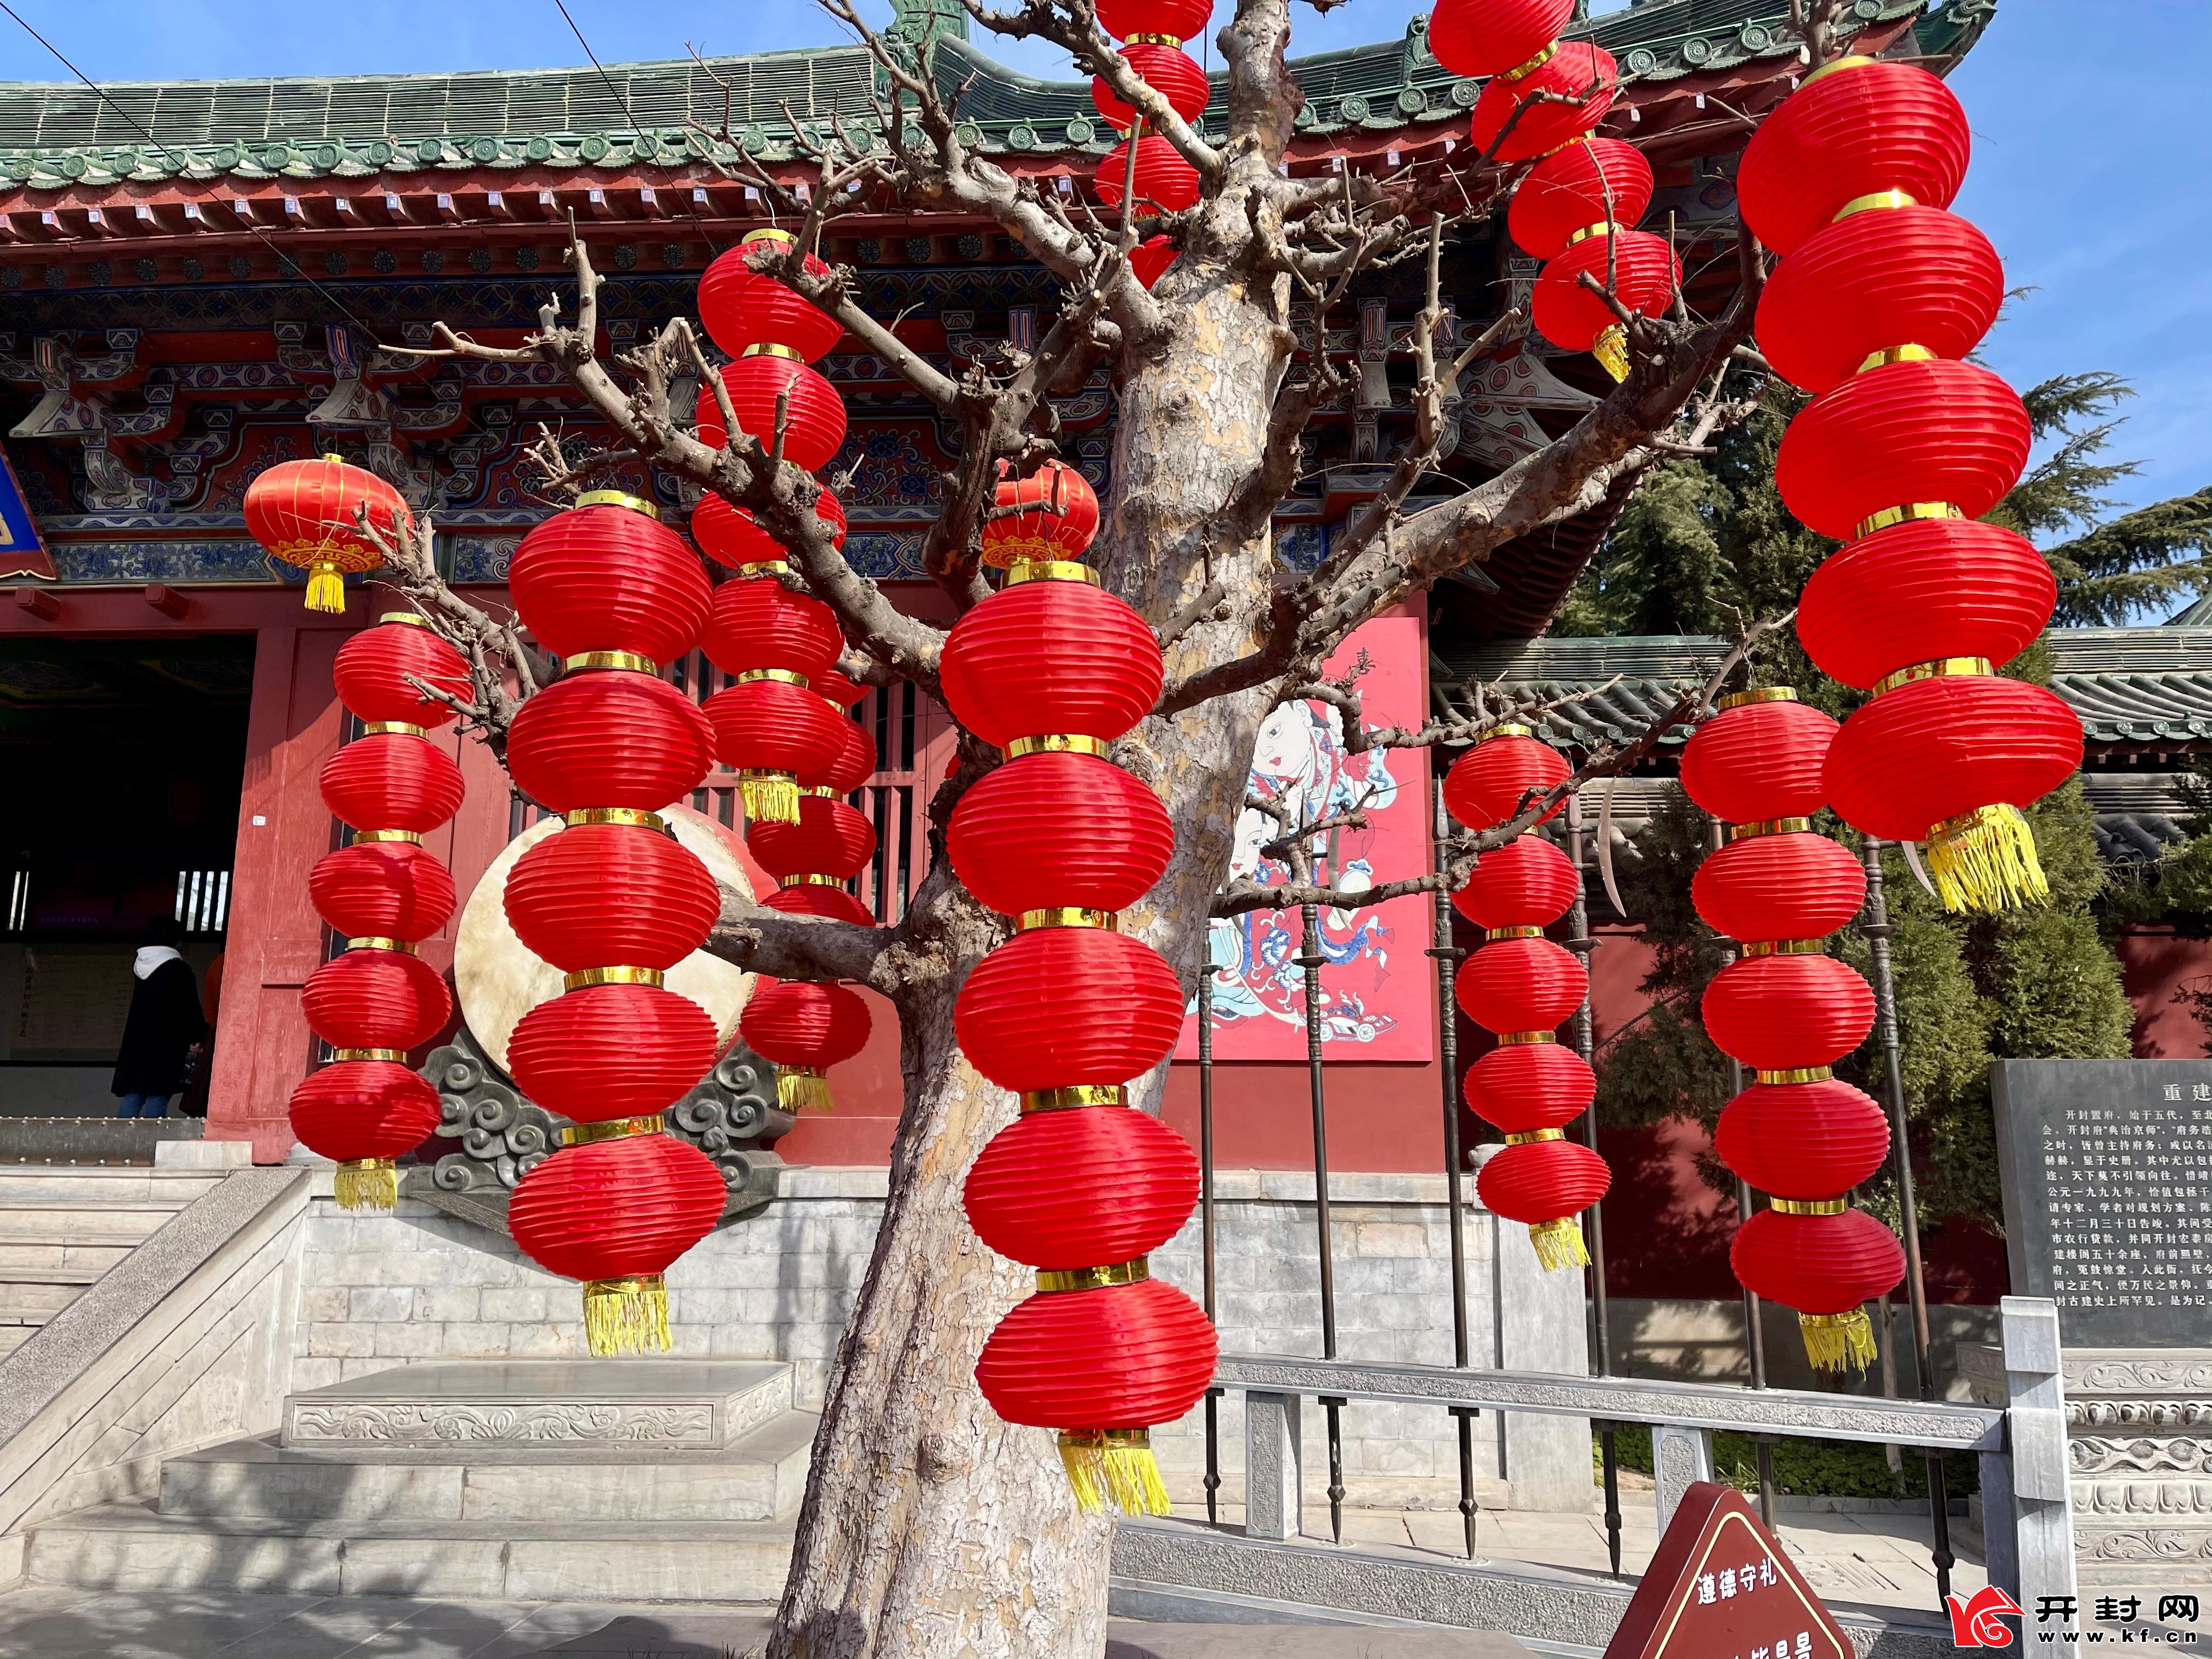 春节临近，开封各大景区都挂上了大红灯笼，各个样式的花灯小品扮靓城市，营造欢乐、喜庆的节日氛围，让市民与游客感受到浓浓的年味。 全媒体记者 姜菡 摄